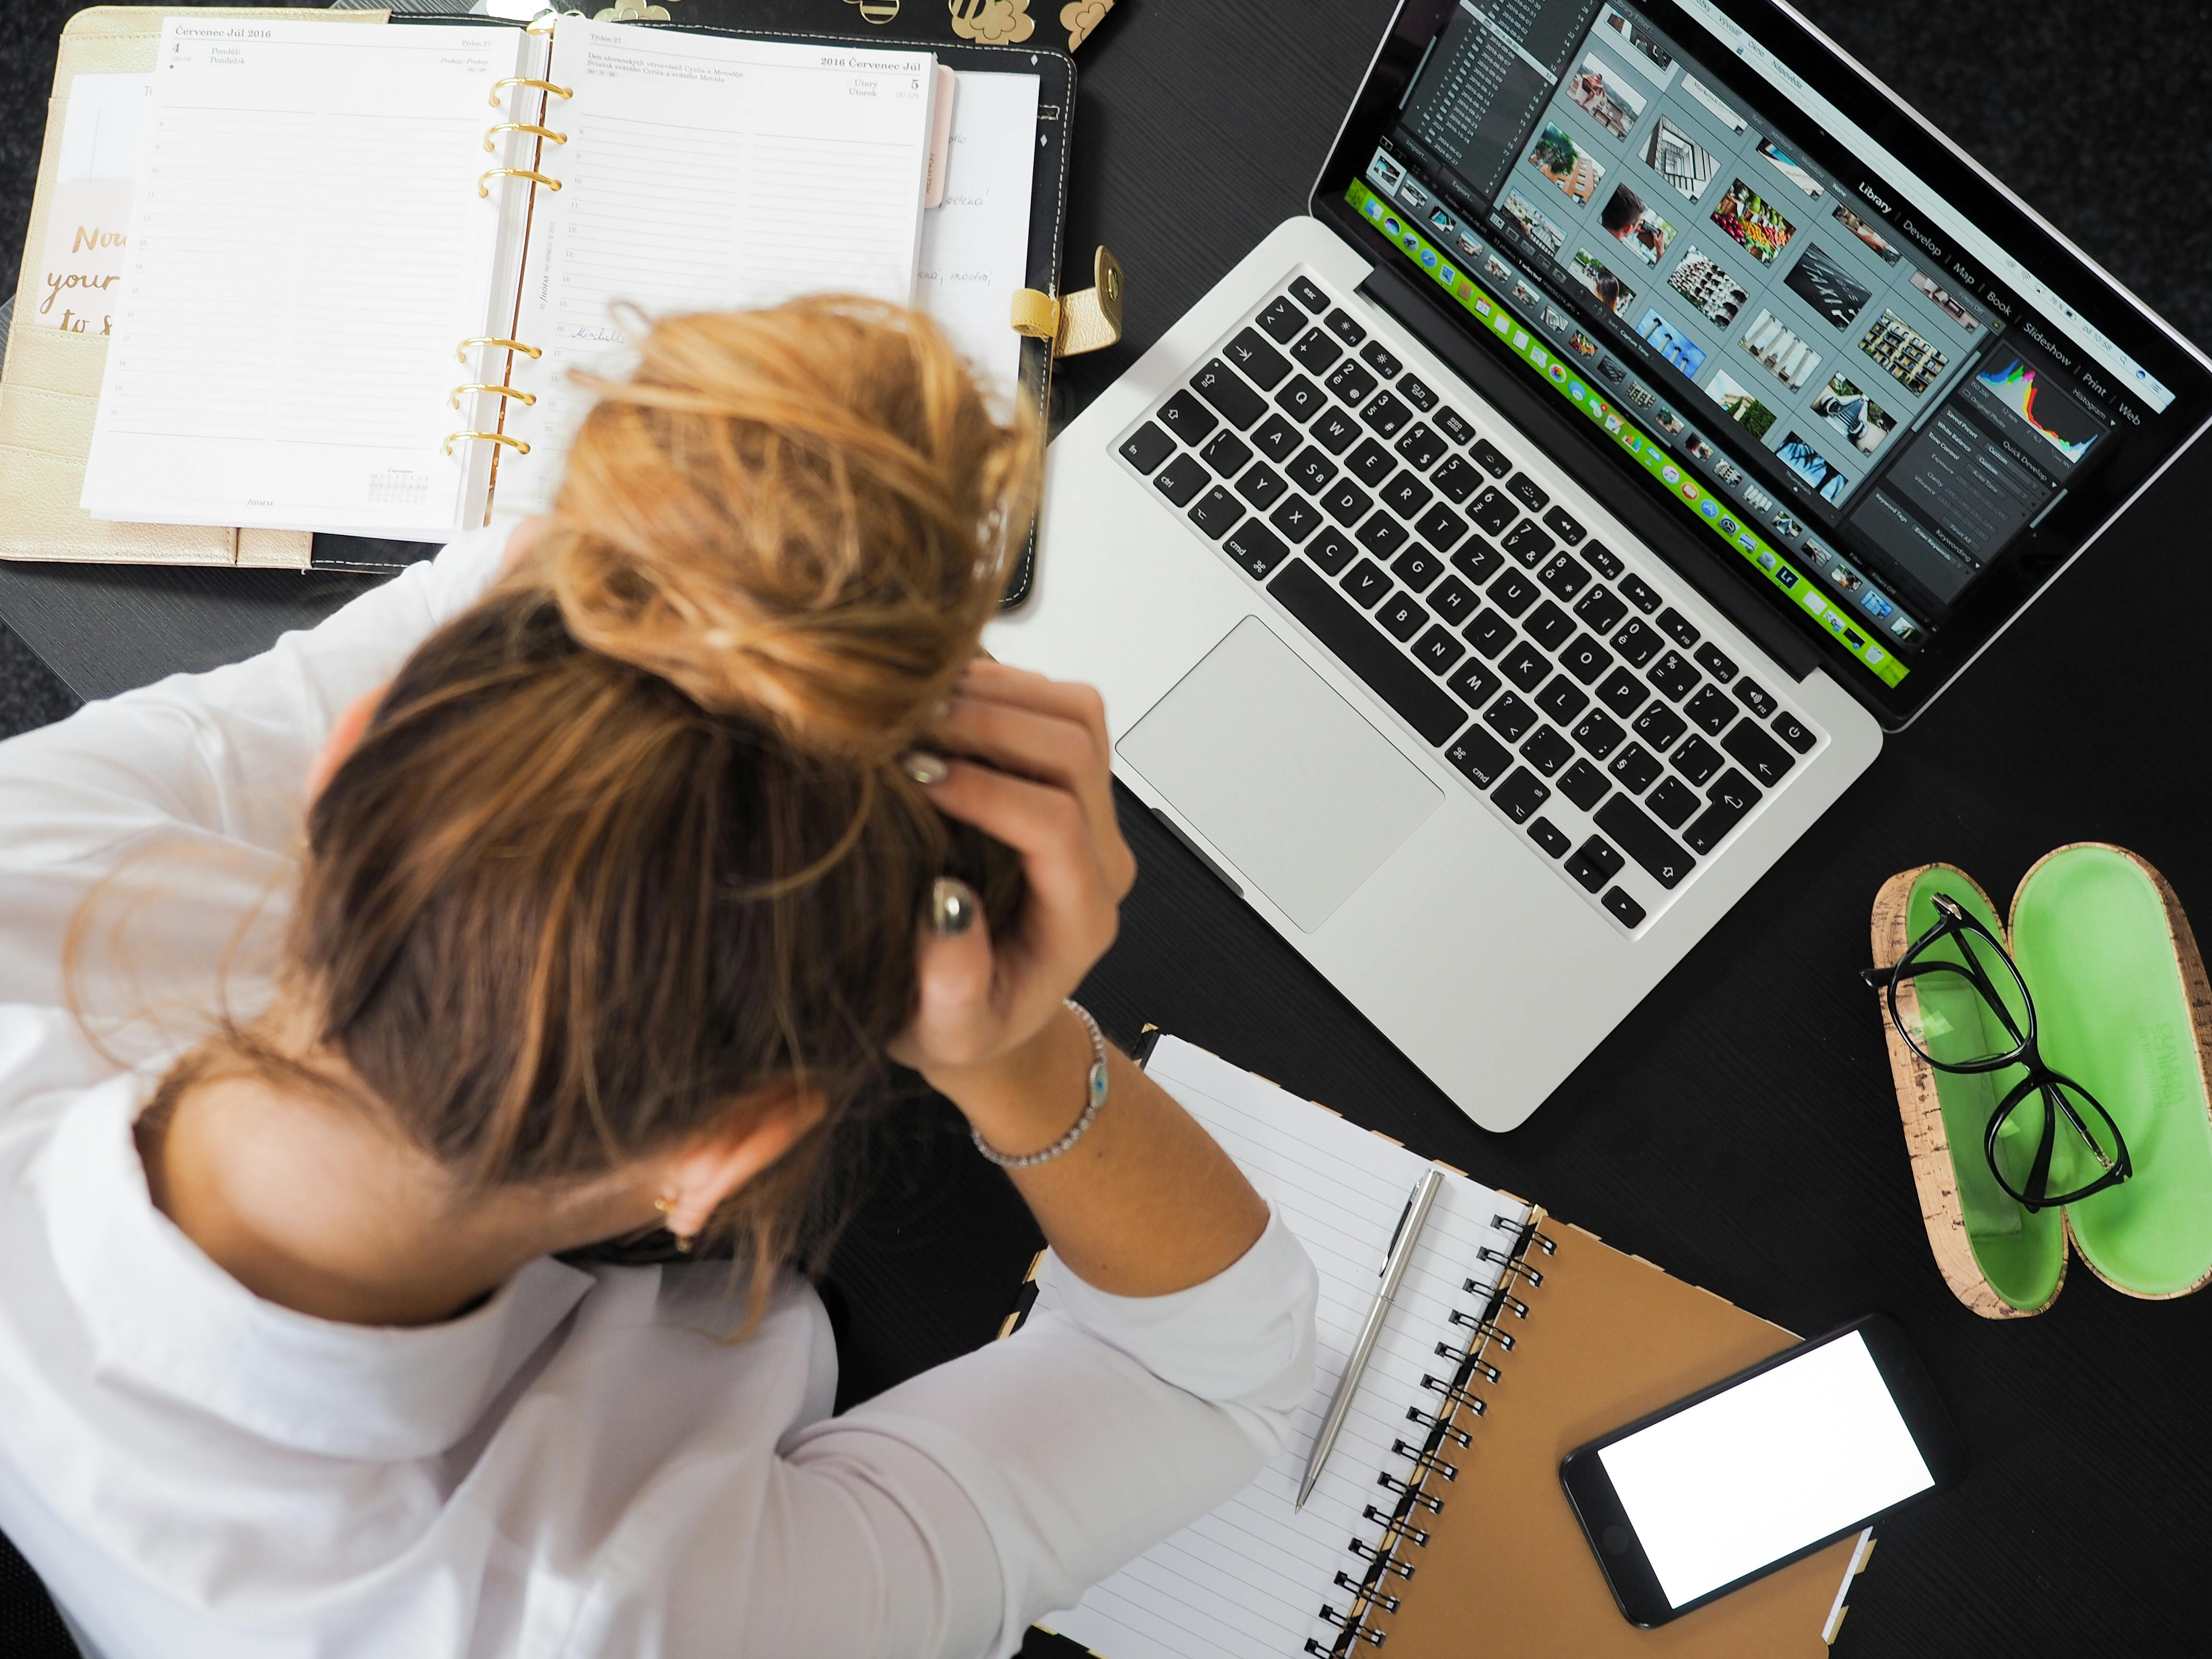 Une jeune femme assise à un bureau avec son agenda et son ordinateur portable | Source : Pexels